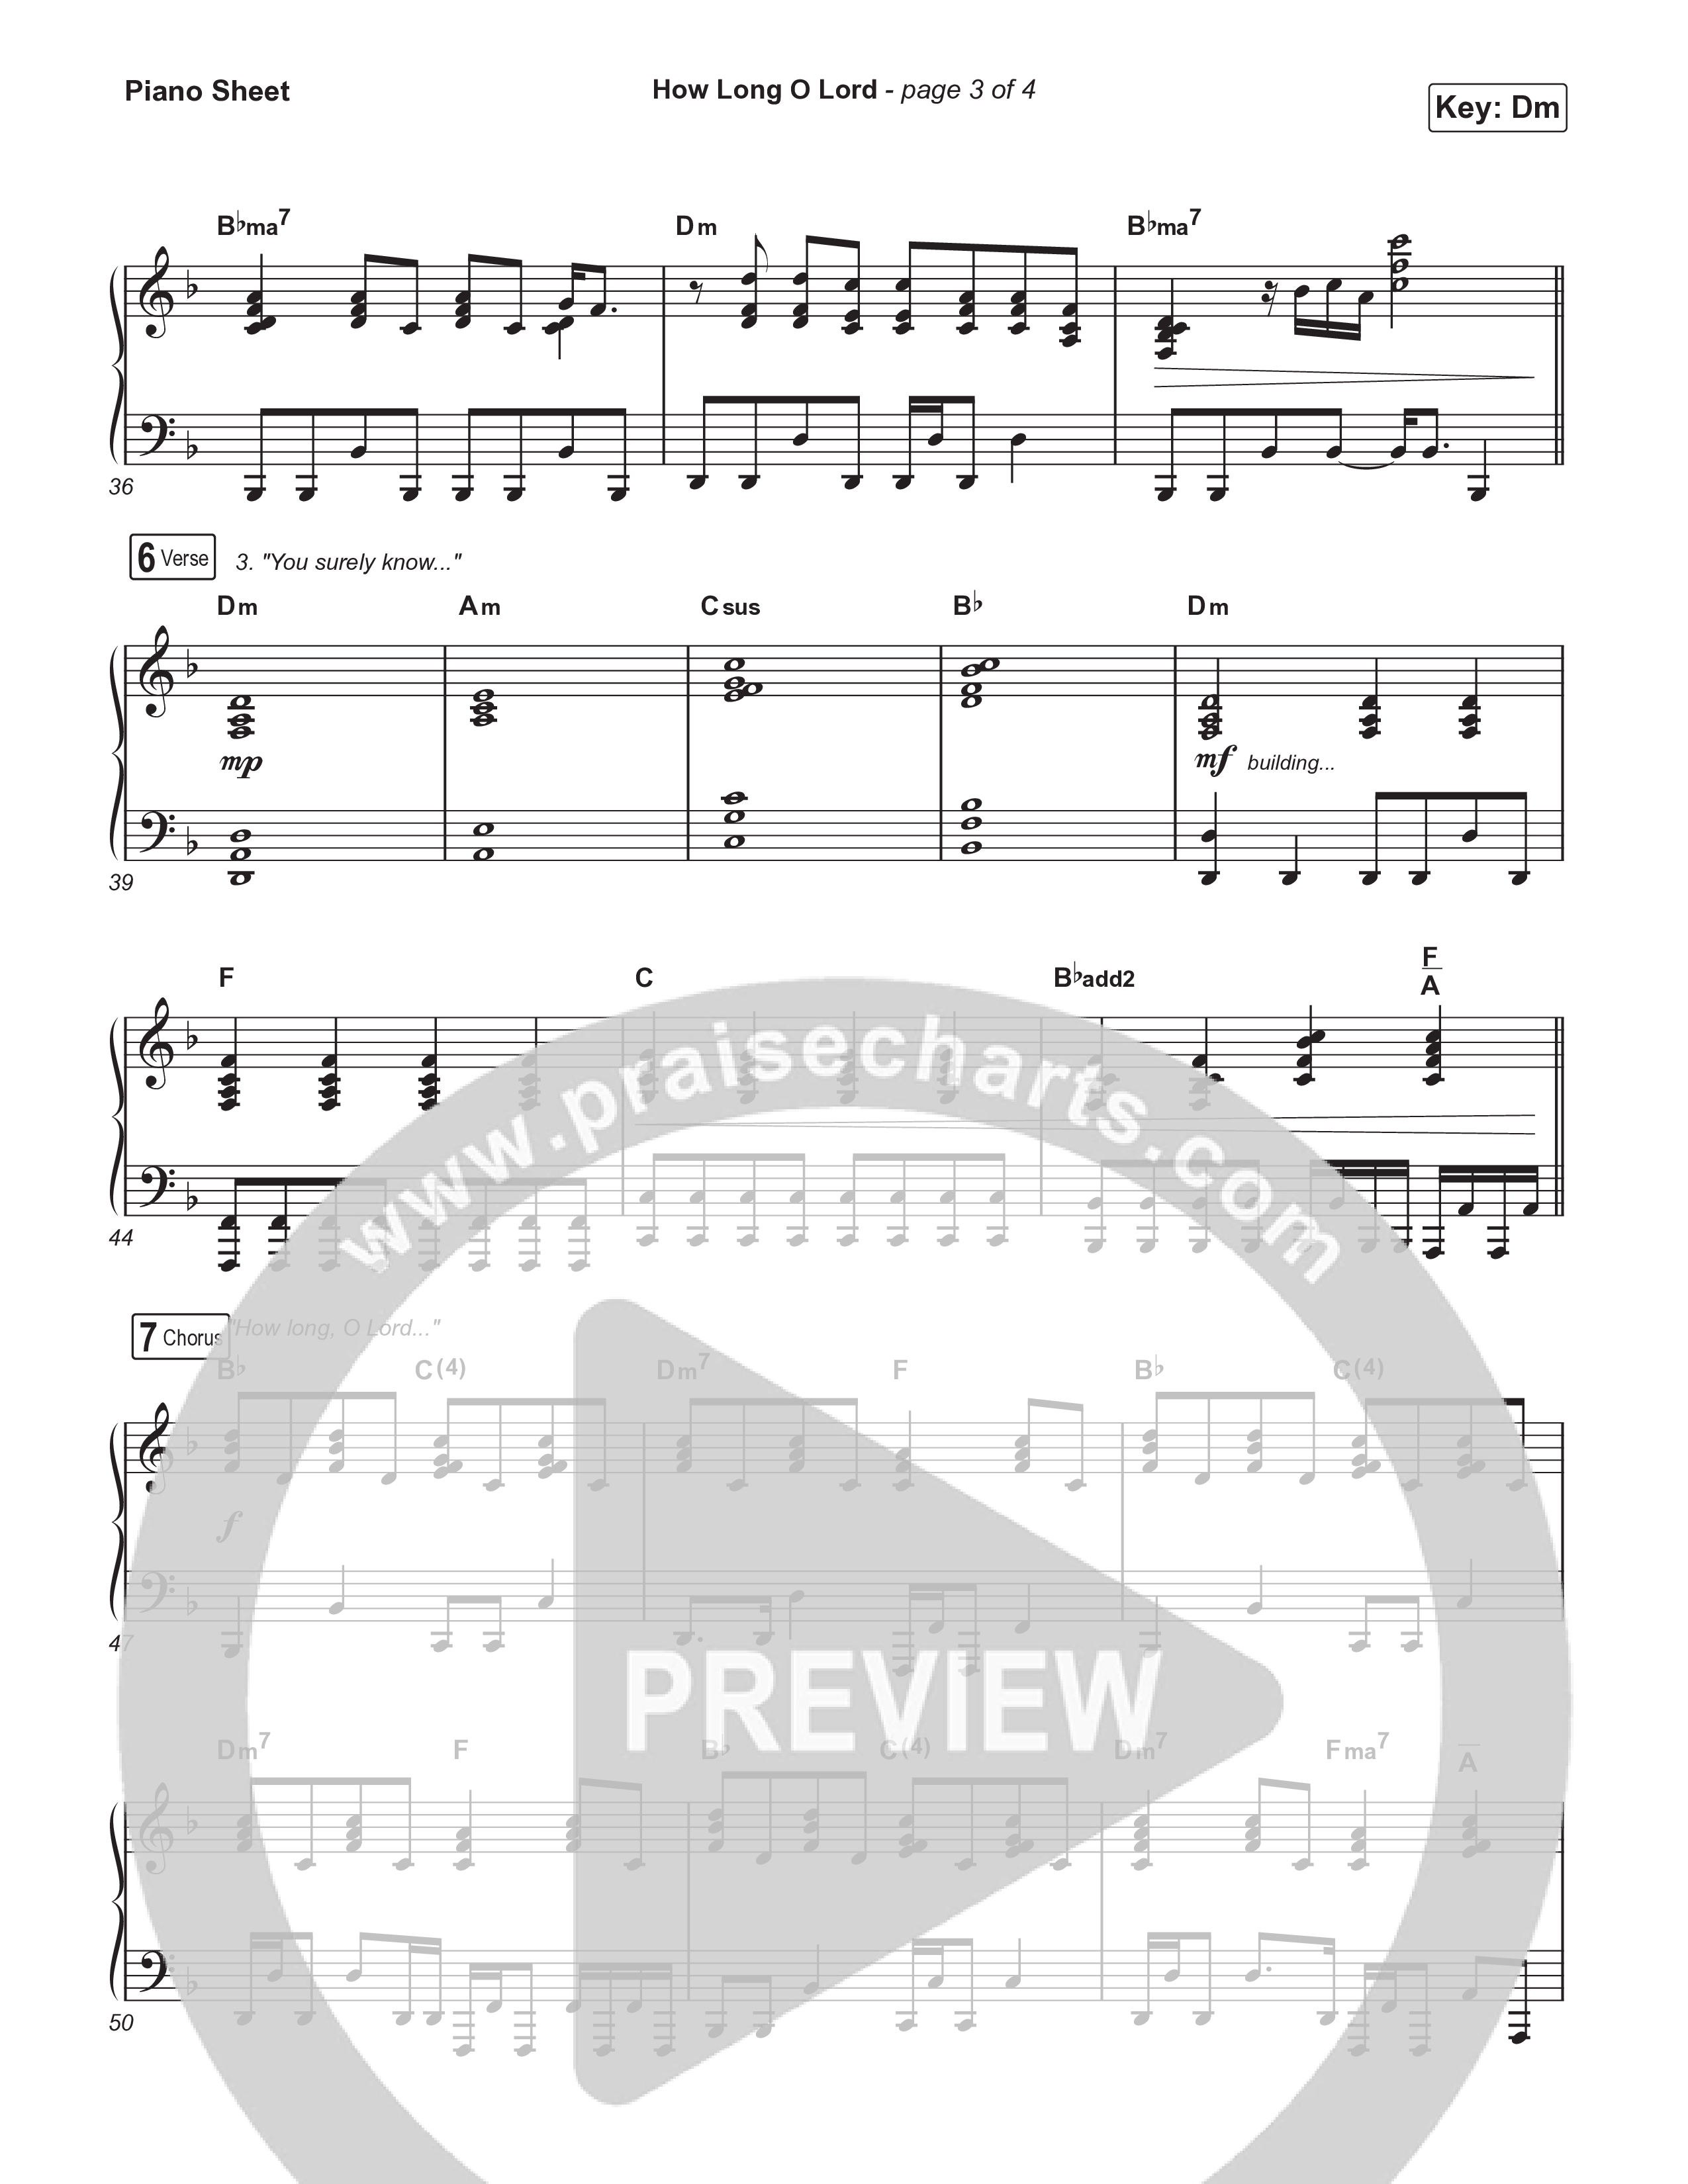 How Long O Lord Piano Sheet (Keith & Kristyn Getty / Jordan Kauflin / Matt Merker)